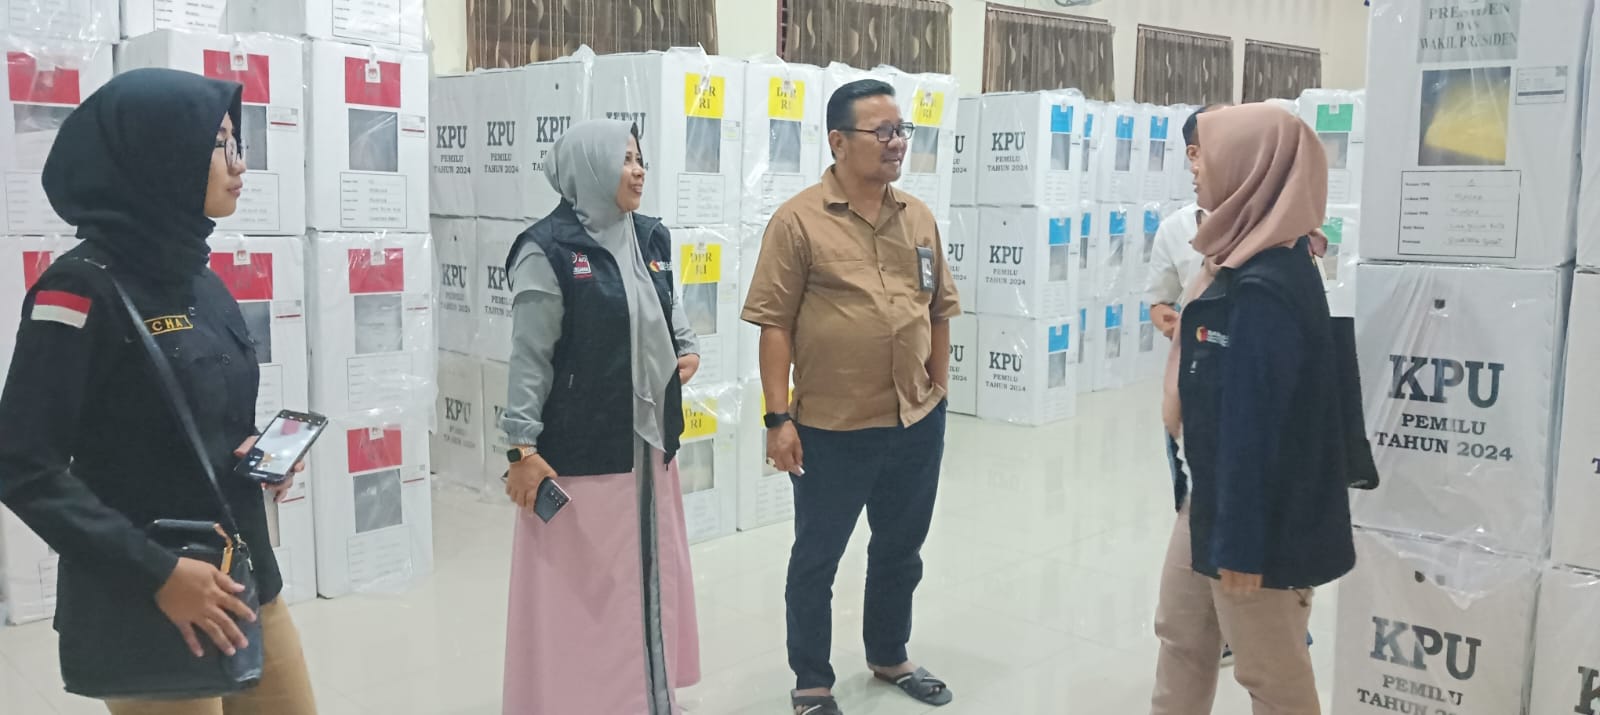 Kasek Bawaslu Sumbar dan Limapuluh Kota Tinjau Gudang Logistik Sekaligus Patroli Pengawasan Pemilu ke Sejumlah Kecamatan